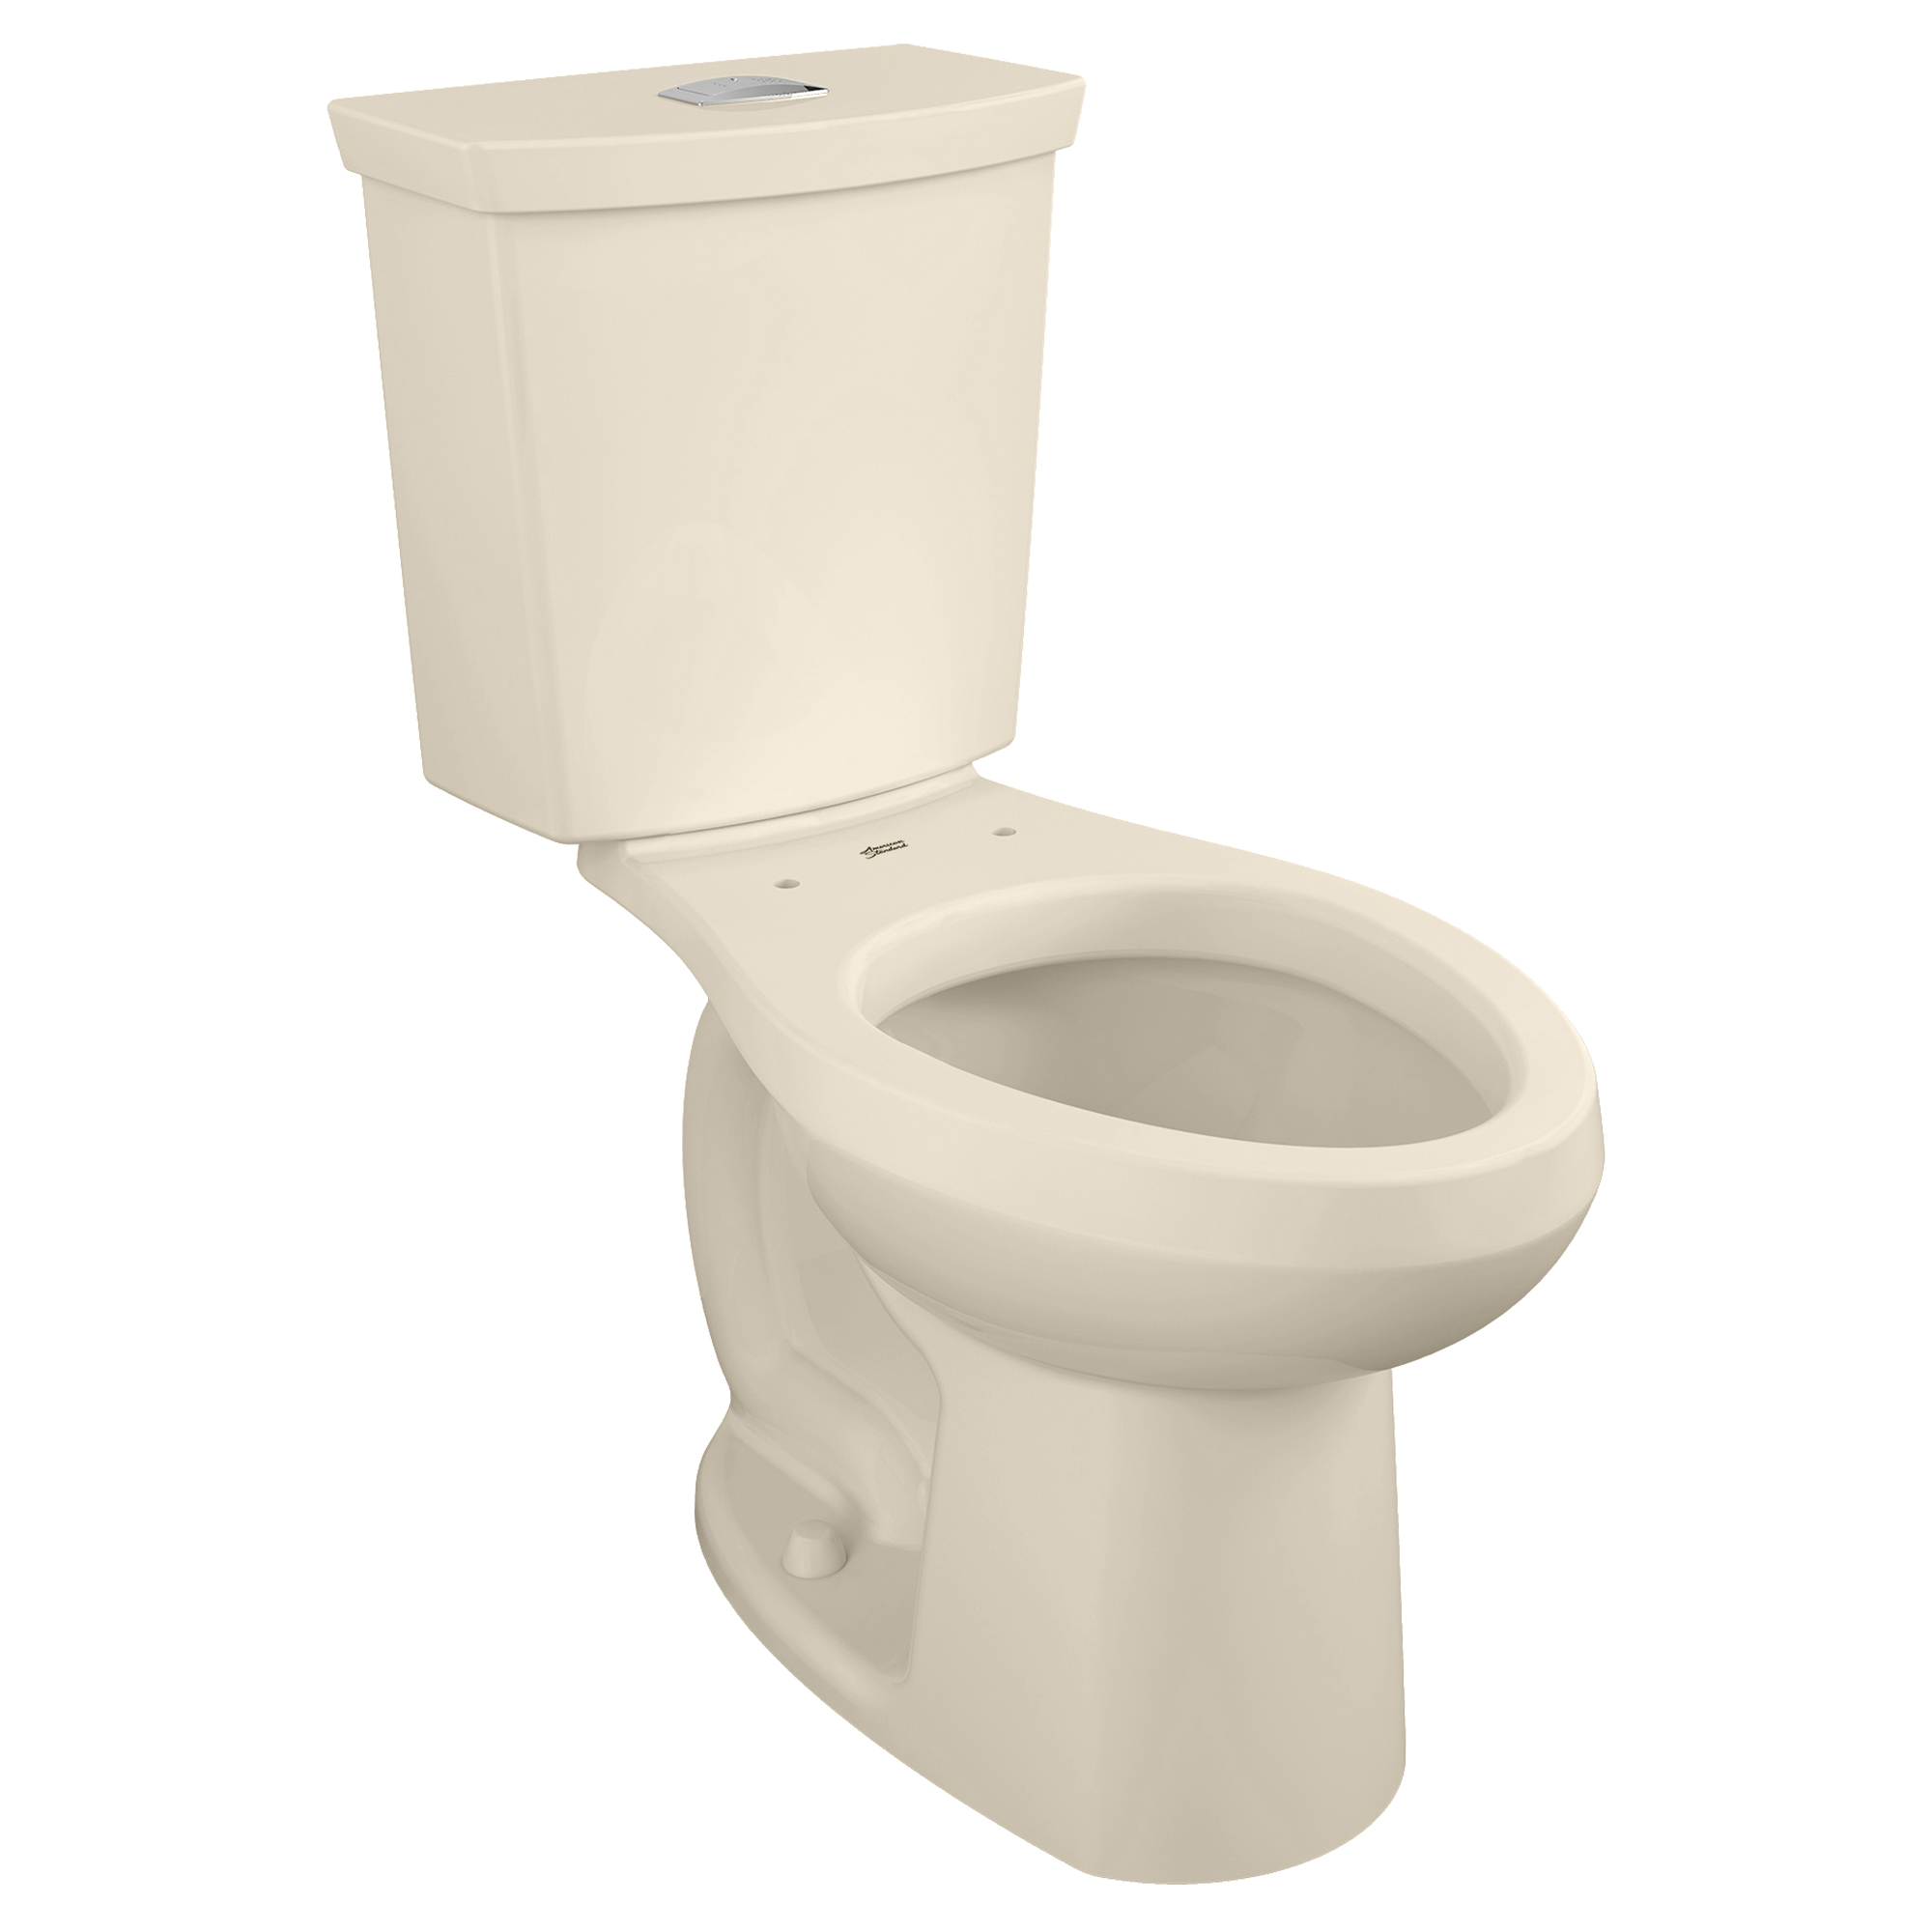 Dual flush toilet - Wikipedia